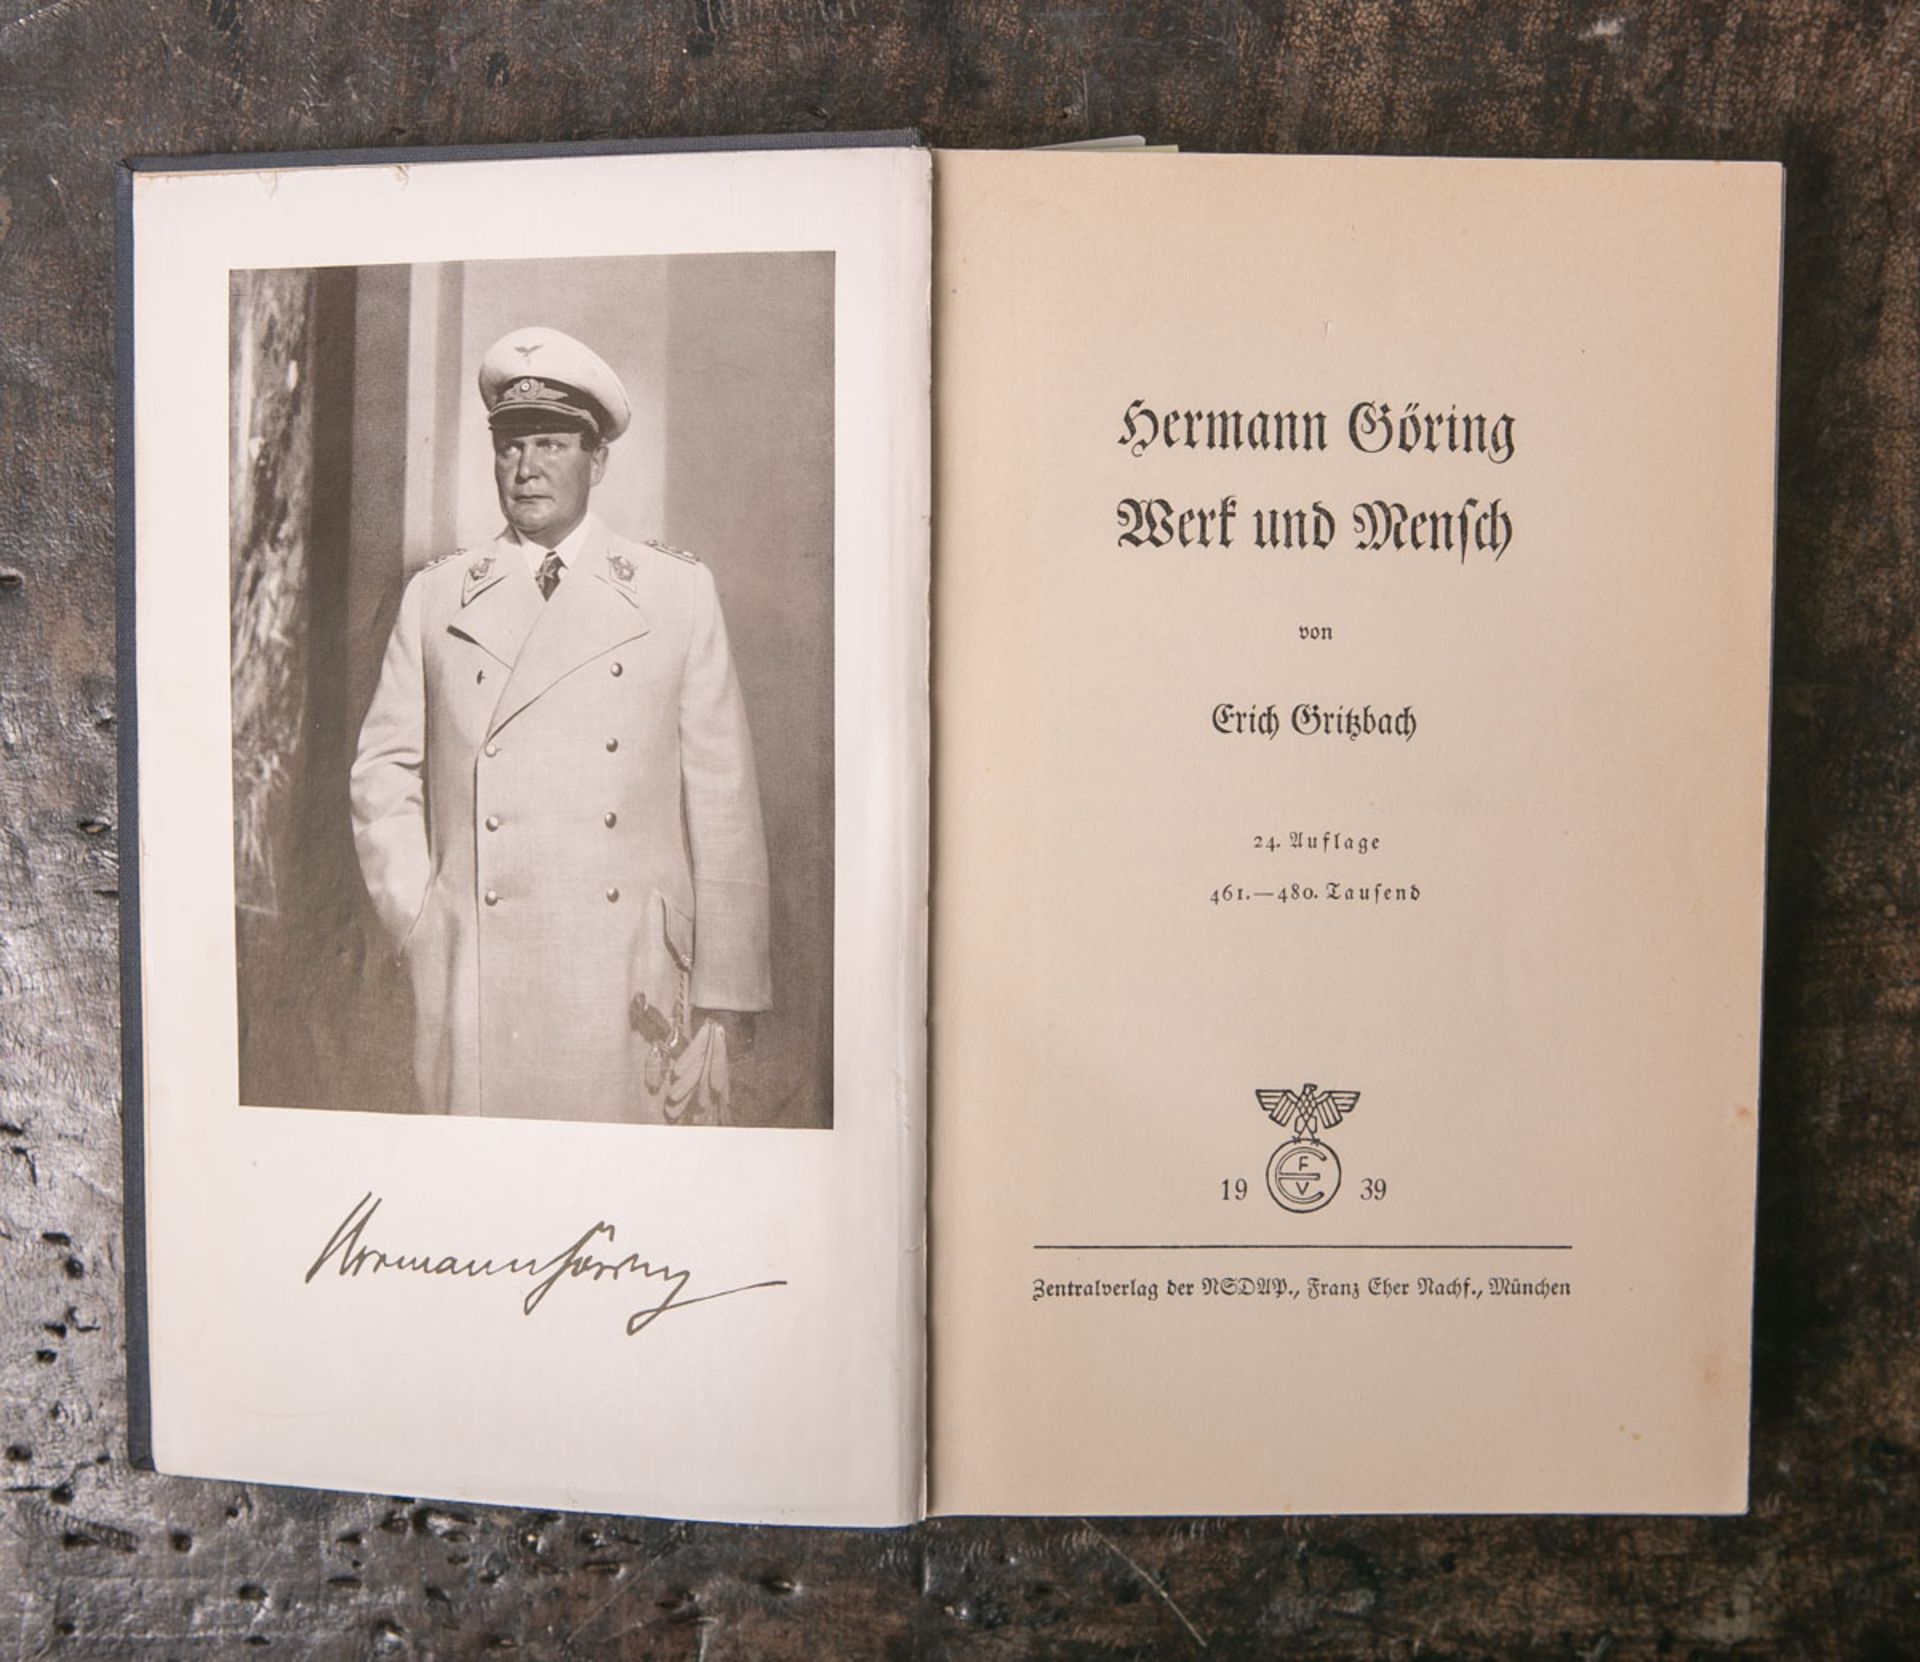 Grießbach, Erich (Hrsg.), "Hermann Göring. Werk und Mensch", 24. Aufl., Zentralverlag der NSDAP,